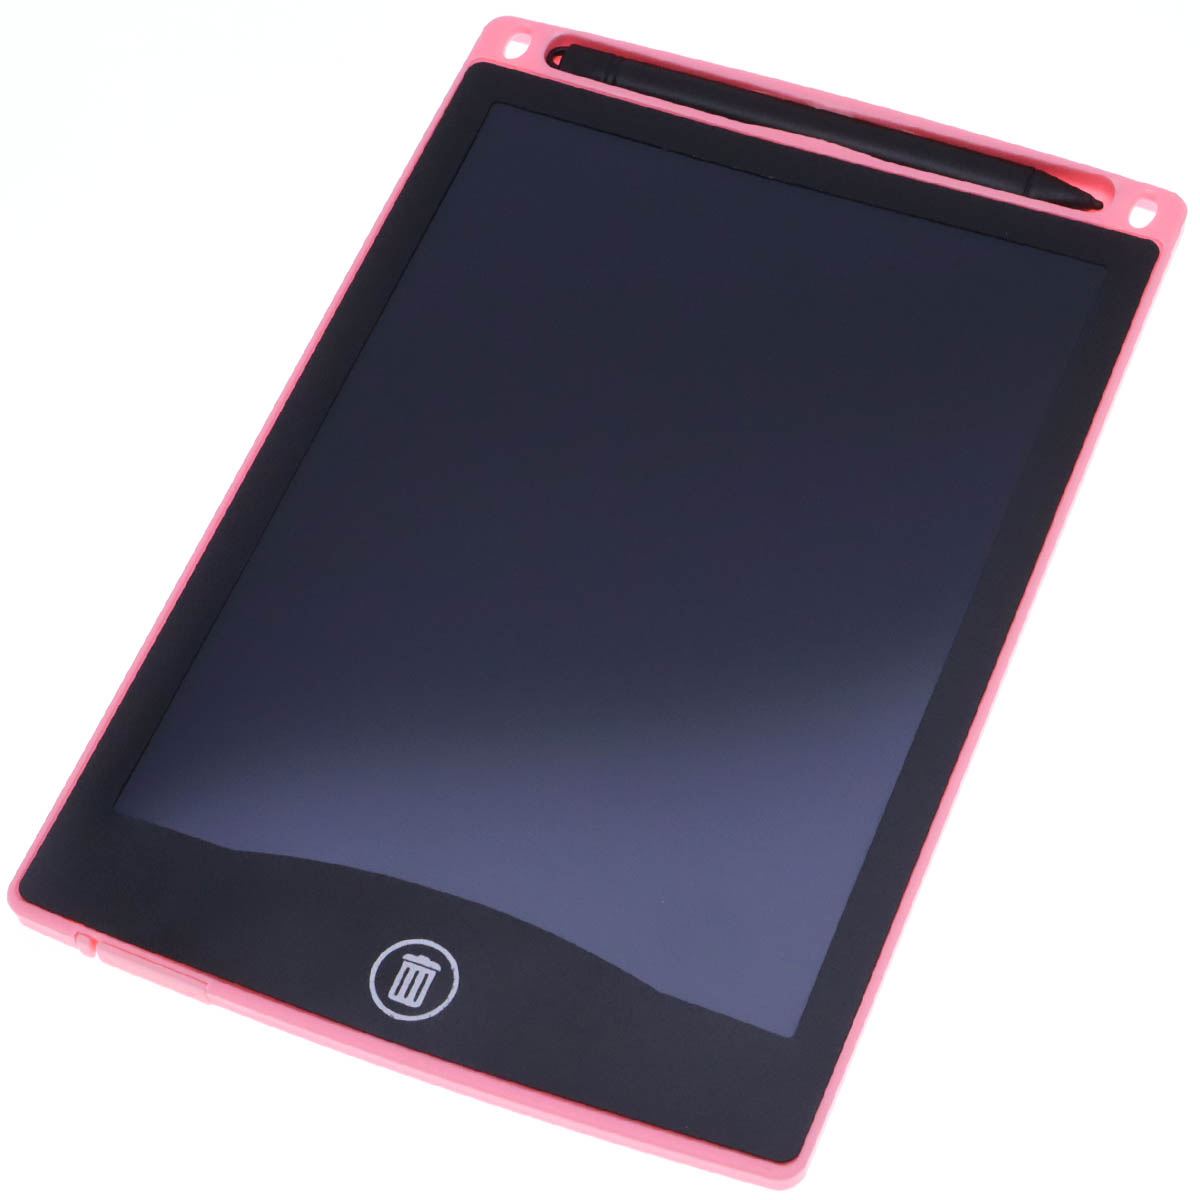 Графический планшет BAIBIAN с сенсорным дисплеем для рисования, 8.5 дюймов, цвет розовый